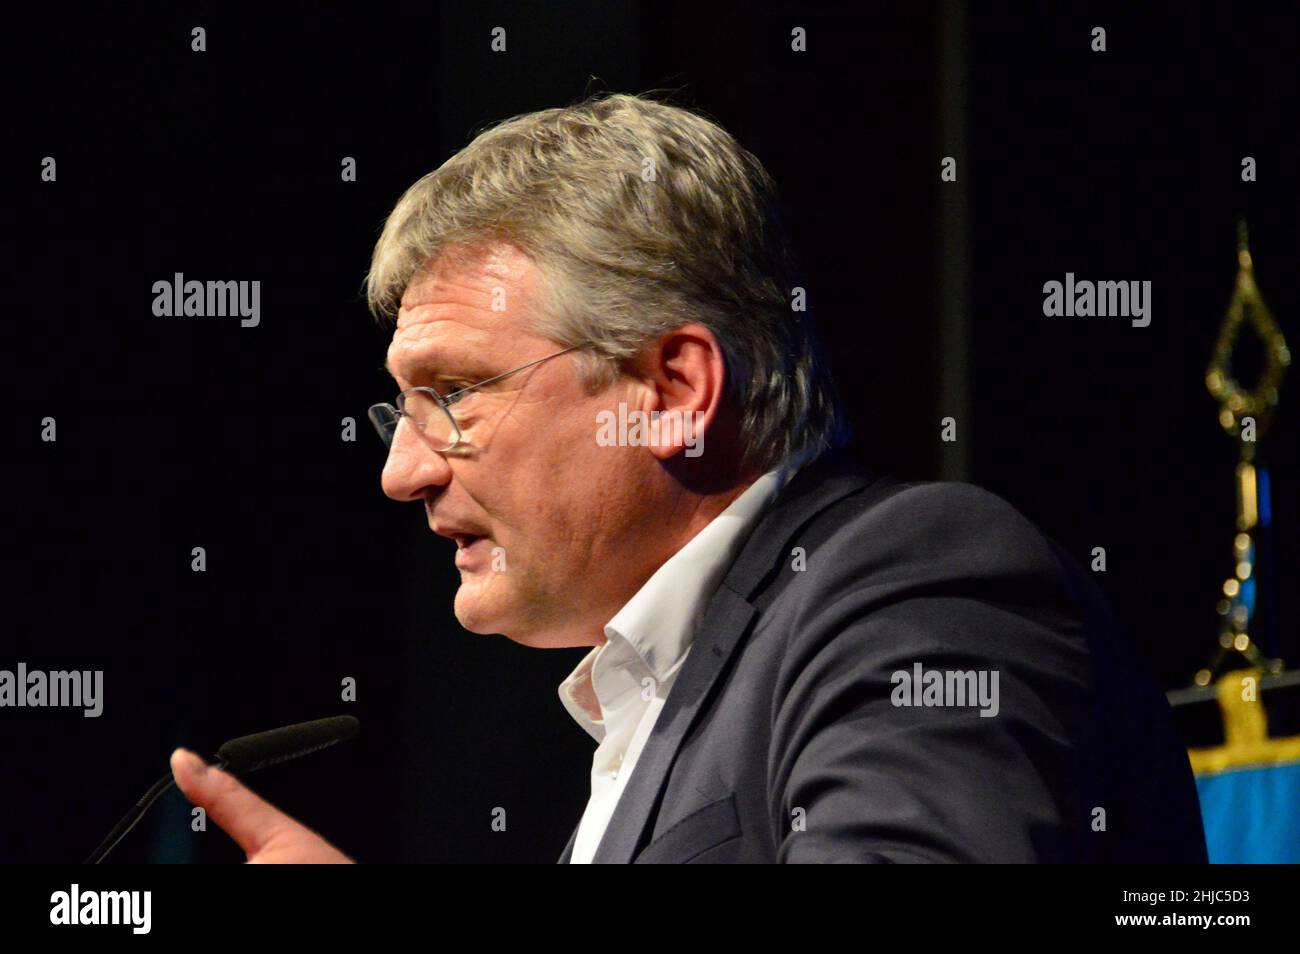 AFD-Parteichef Jörg Meuthen ist am 28.01.2022 aus der AFD ausgetreten und hat damit auch seinen Parteivorsitz mit sofortiger Wirkung niedergelegt. Im Foto Stock